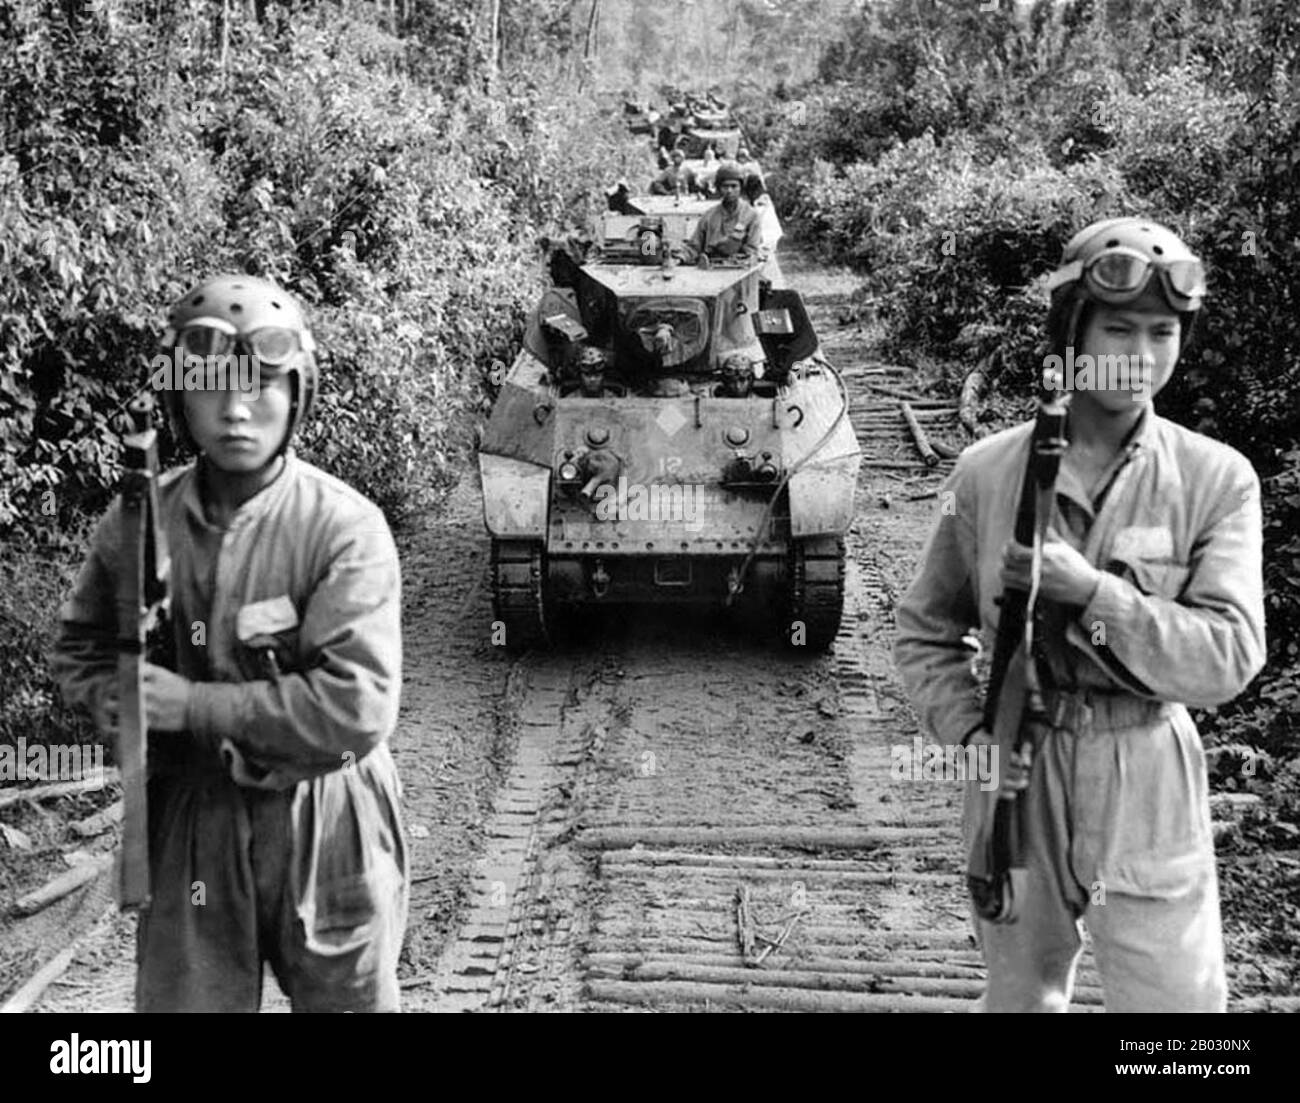 China Birmanie India Theatre (CBI) a été le nom utilisé par l'armée des États-Unis pour ses forces qui opèrent en collaboration avec les forces aériennes et terrestres alliées britanniques et chinoises en Chine, en Birmanie et en Inde pendant la seconde Guerre mondiale Parmi les unités américaines bien connues de ce théâtre figurent les Flying Tigers, les unités de transport et de bombardier qui volent le Hump, le premier Air Commando Group, les ingénieurs qui construisaient Ledo Road et la 5707 composite Unit (provisoire), autrement connue sous le nom de Merrill's Marauders. Banque D'Images